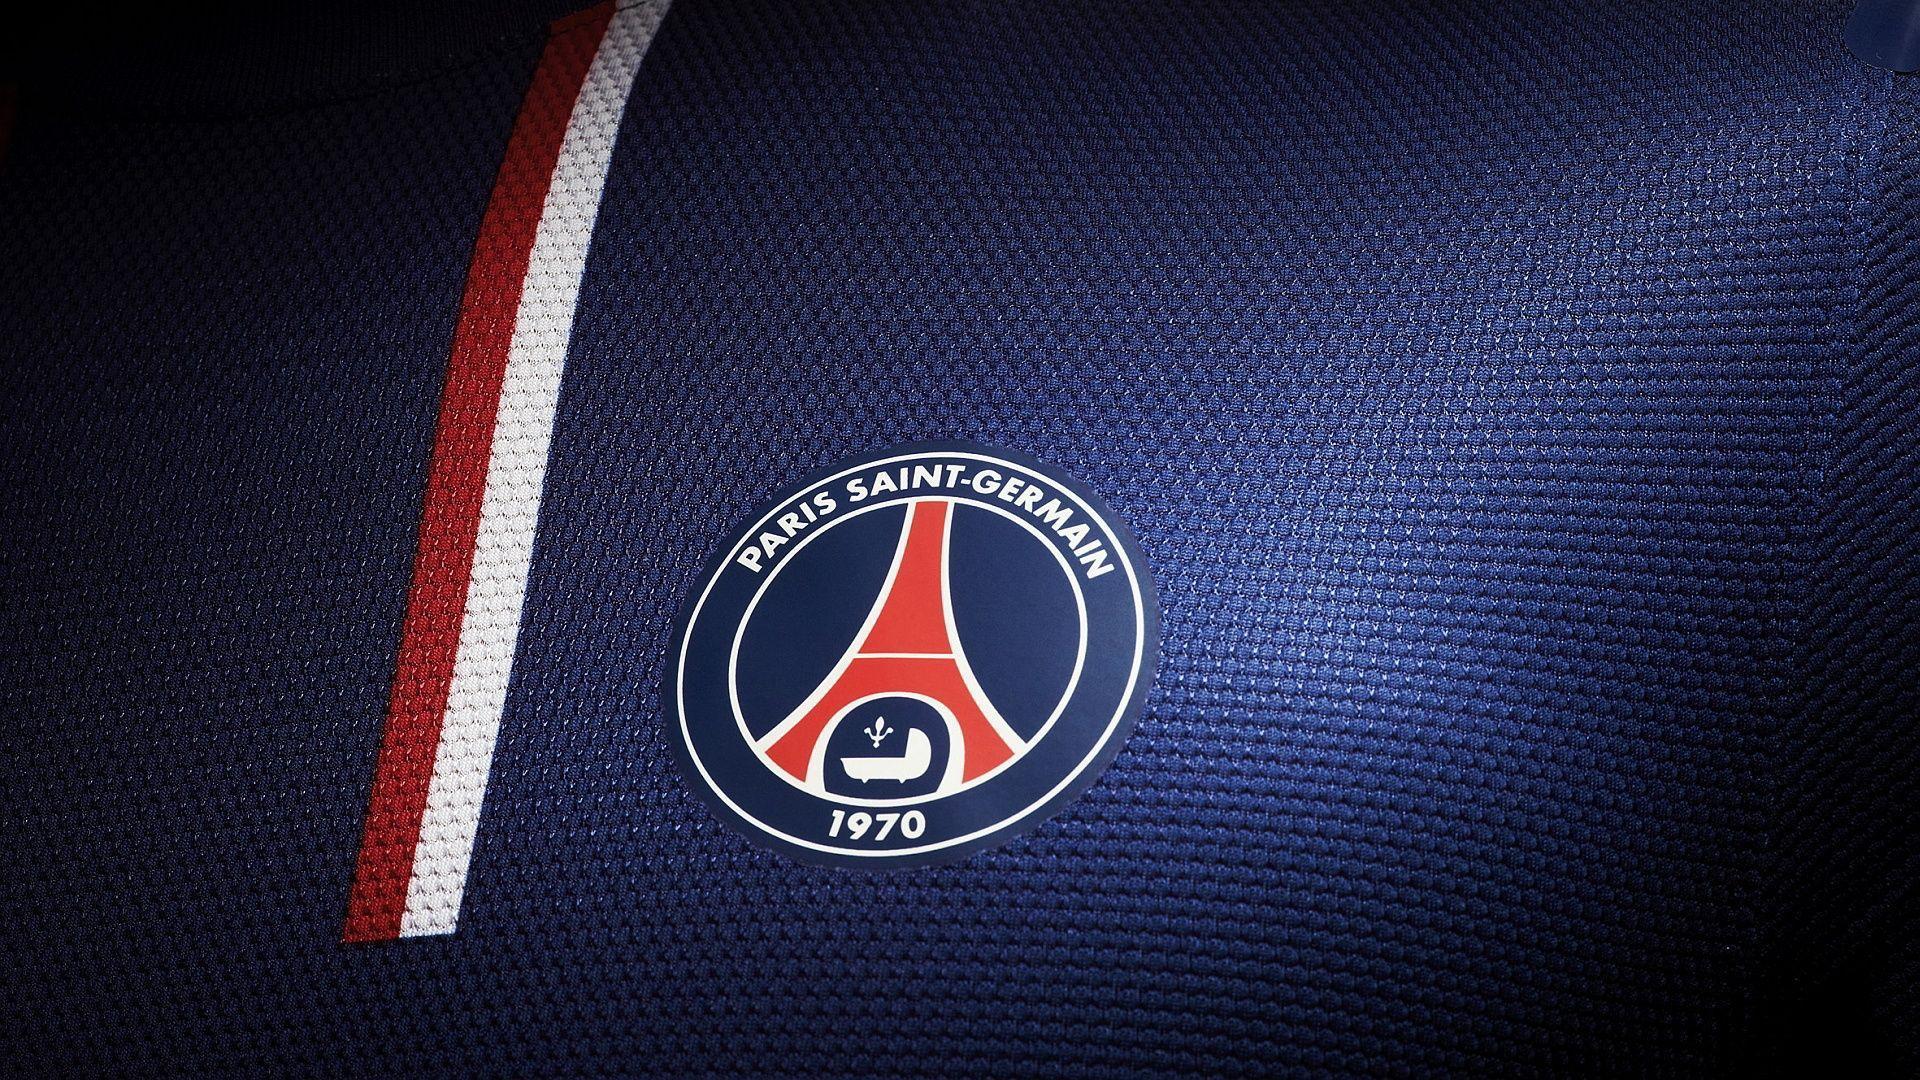 PSG Paris Saint Germain 2015 Shirt Badge HD Wallpaper Free Desktop